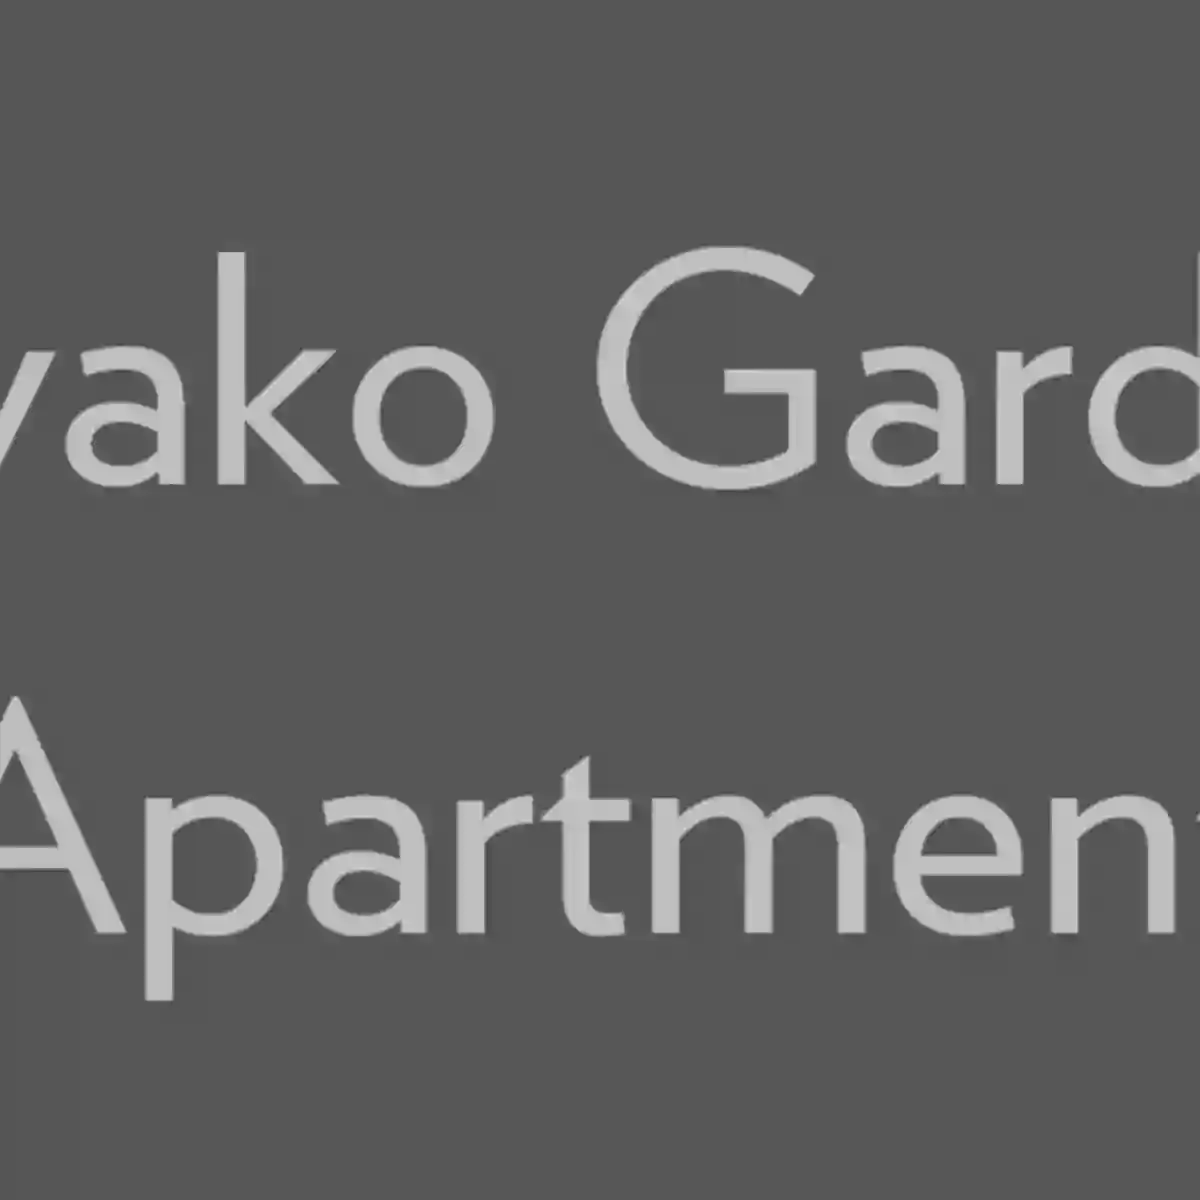 Miyako Gardens Apartments